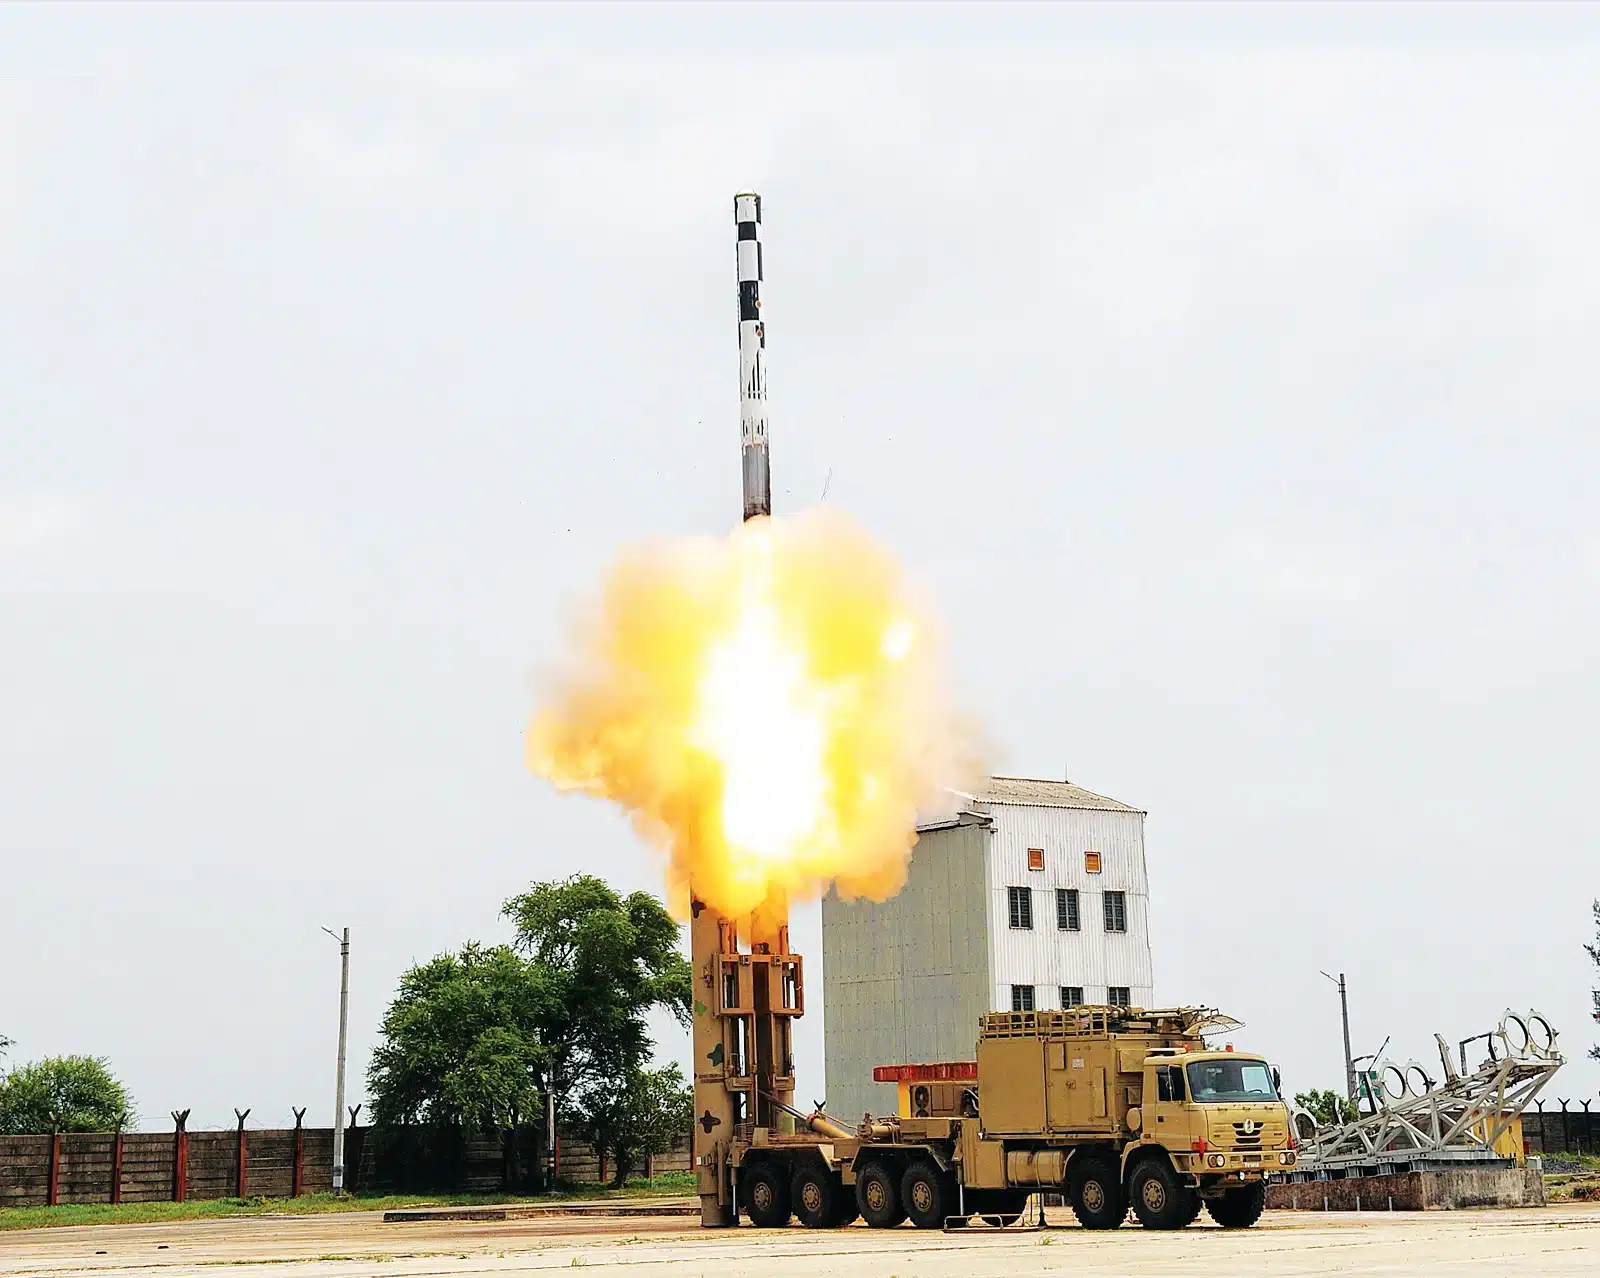 الهند مستعدة لبيع صواريخ كروز لروسيا